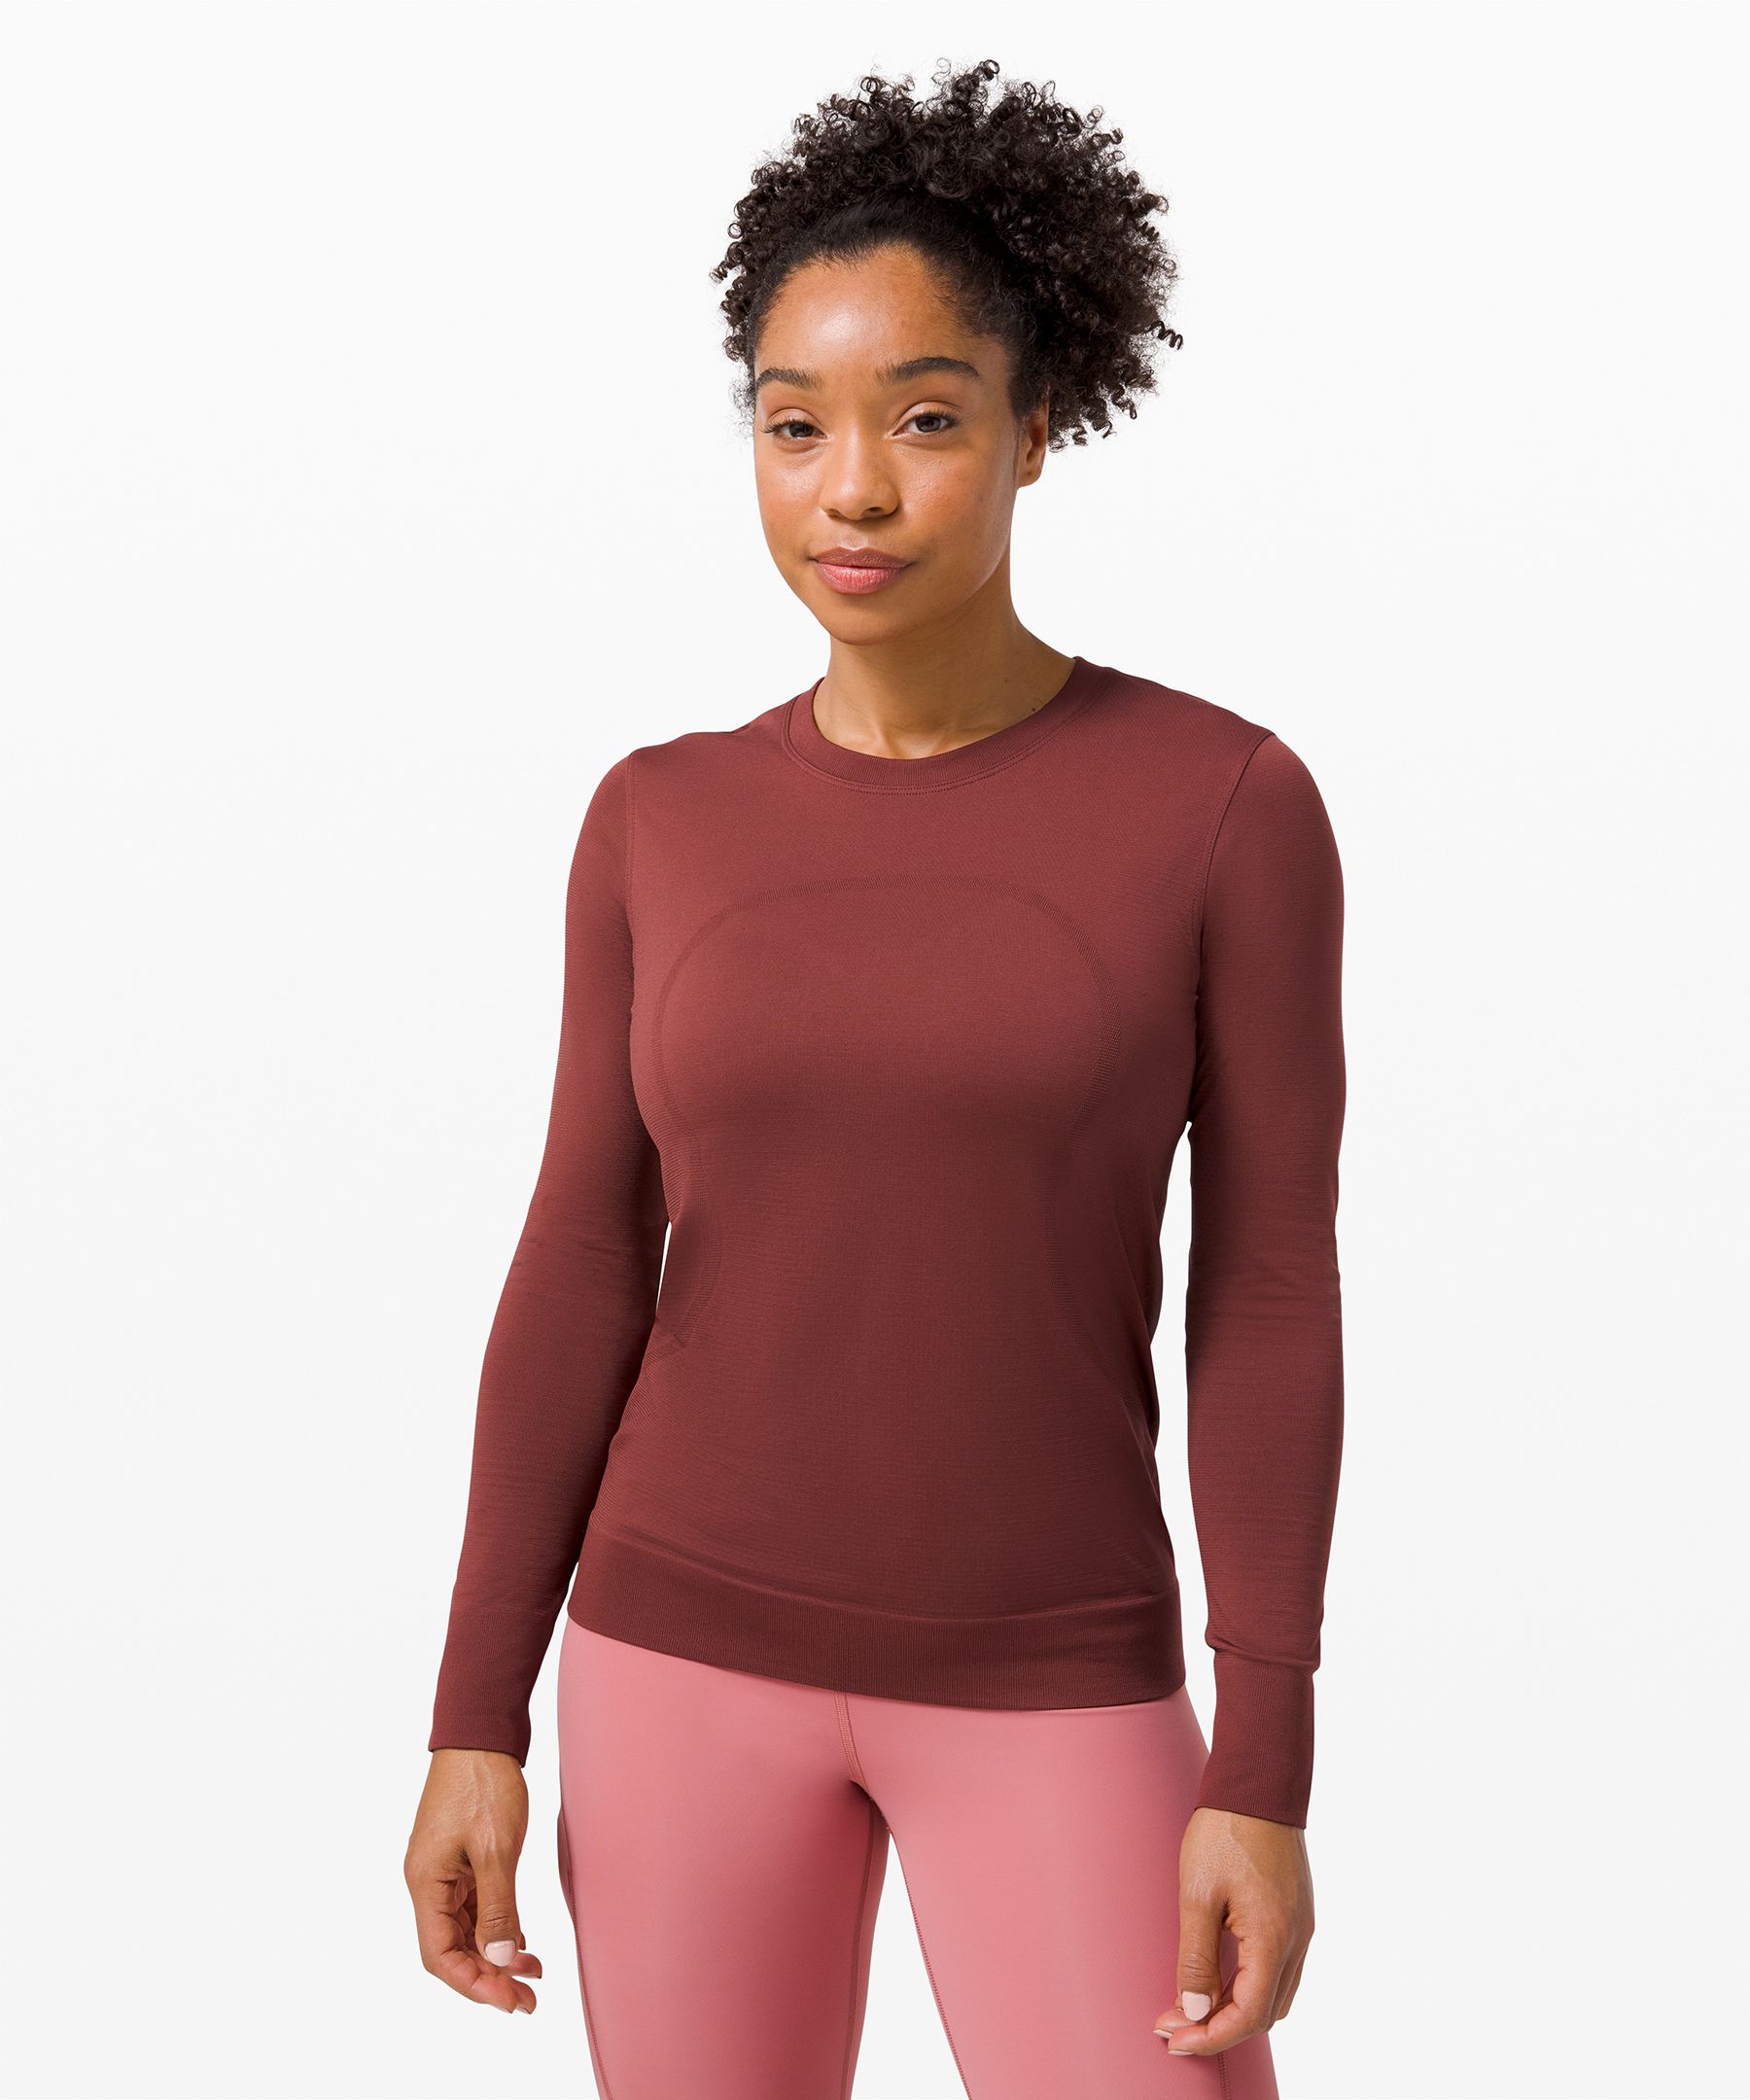 lululemon - Lululemon Swiftly Breathe Short Sleeve - brand new - Lulu size  2 - soft cranberry on Designer Wardrobe